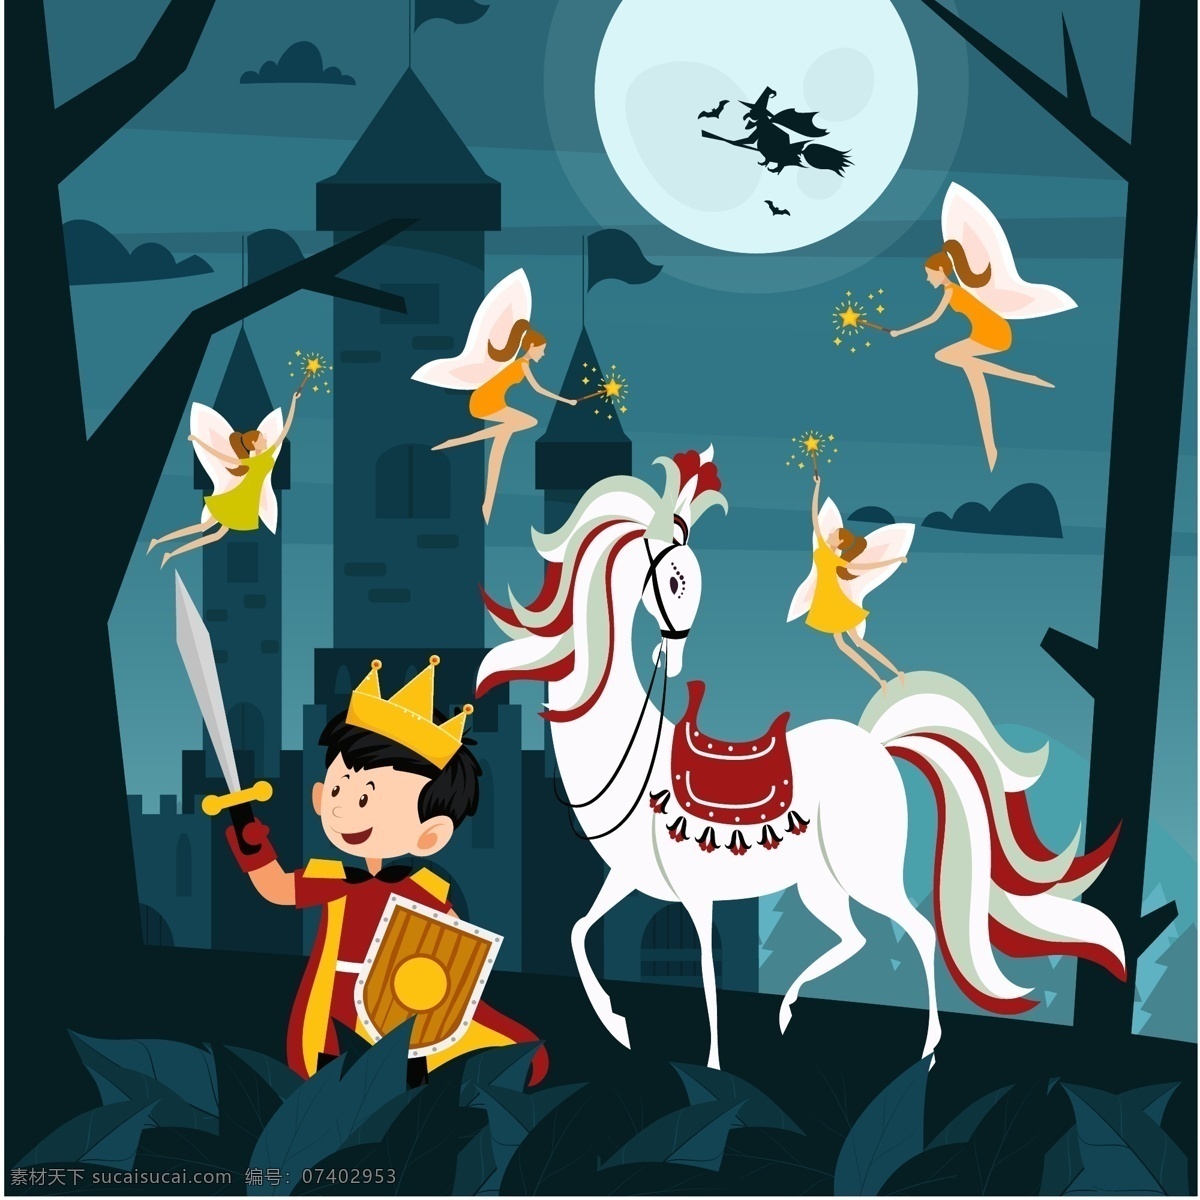 创意童话 王子和白马 矢量素材 夜晚 创意 童话 王子 白马 树林 树木 精灵 宝剑 盾牌 月亮 巫婆 城堡 魔法 矢量图 ai格式